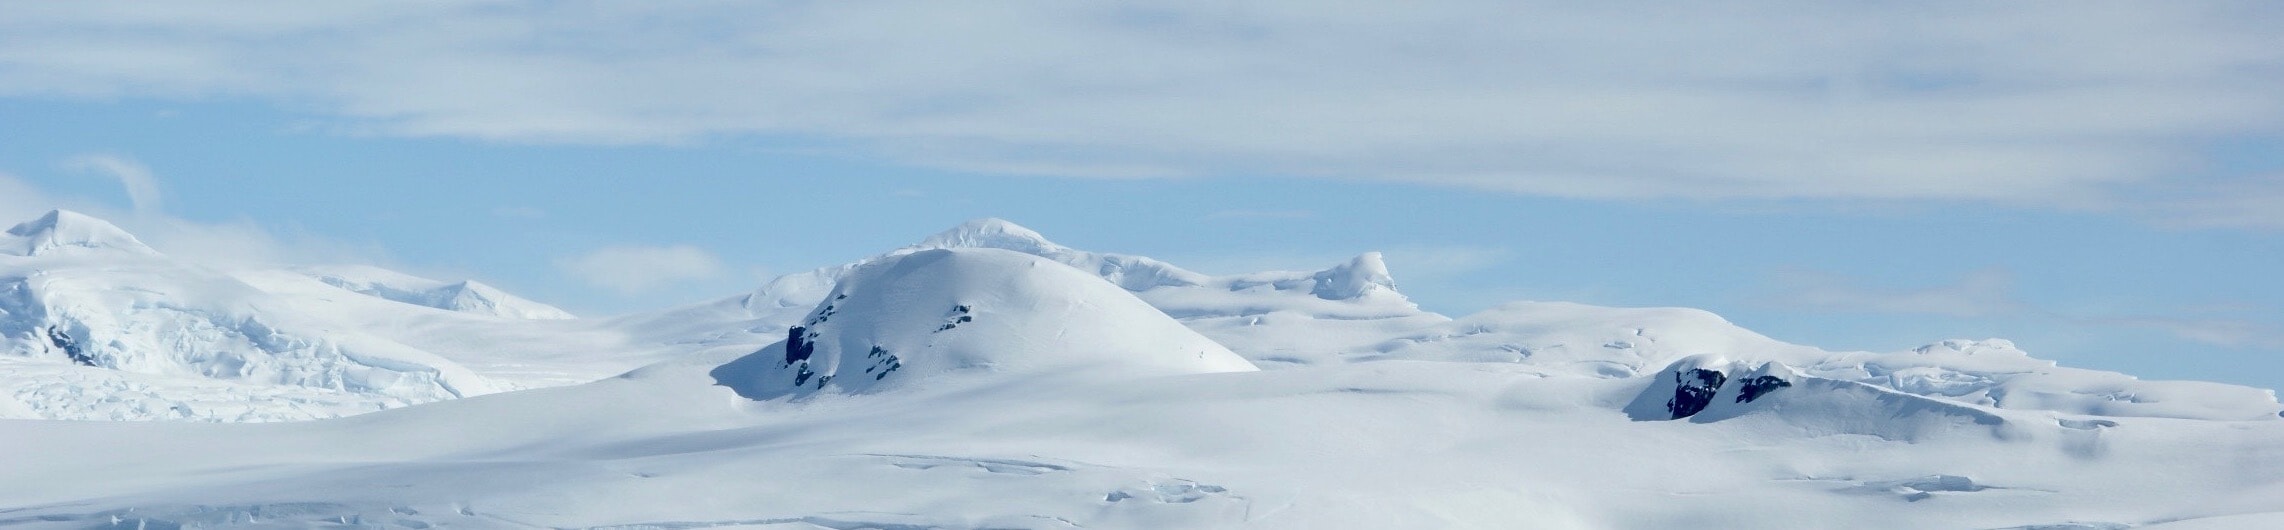 Kiruna – eine Stadt in der Arktis muss umziehen, um nicht vom Erdboden verschluckt zu werden